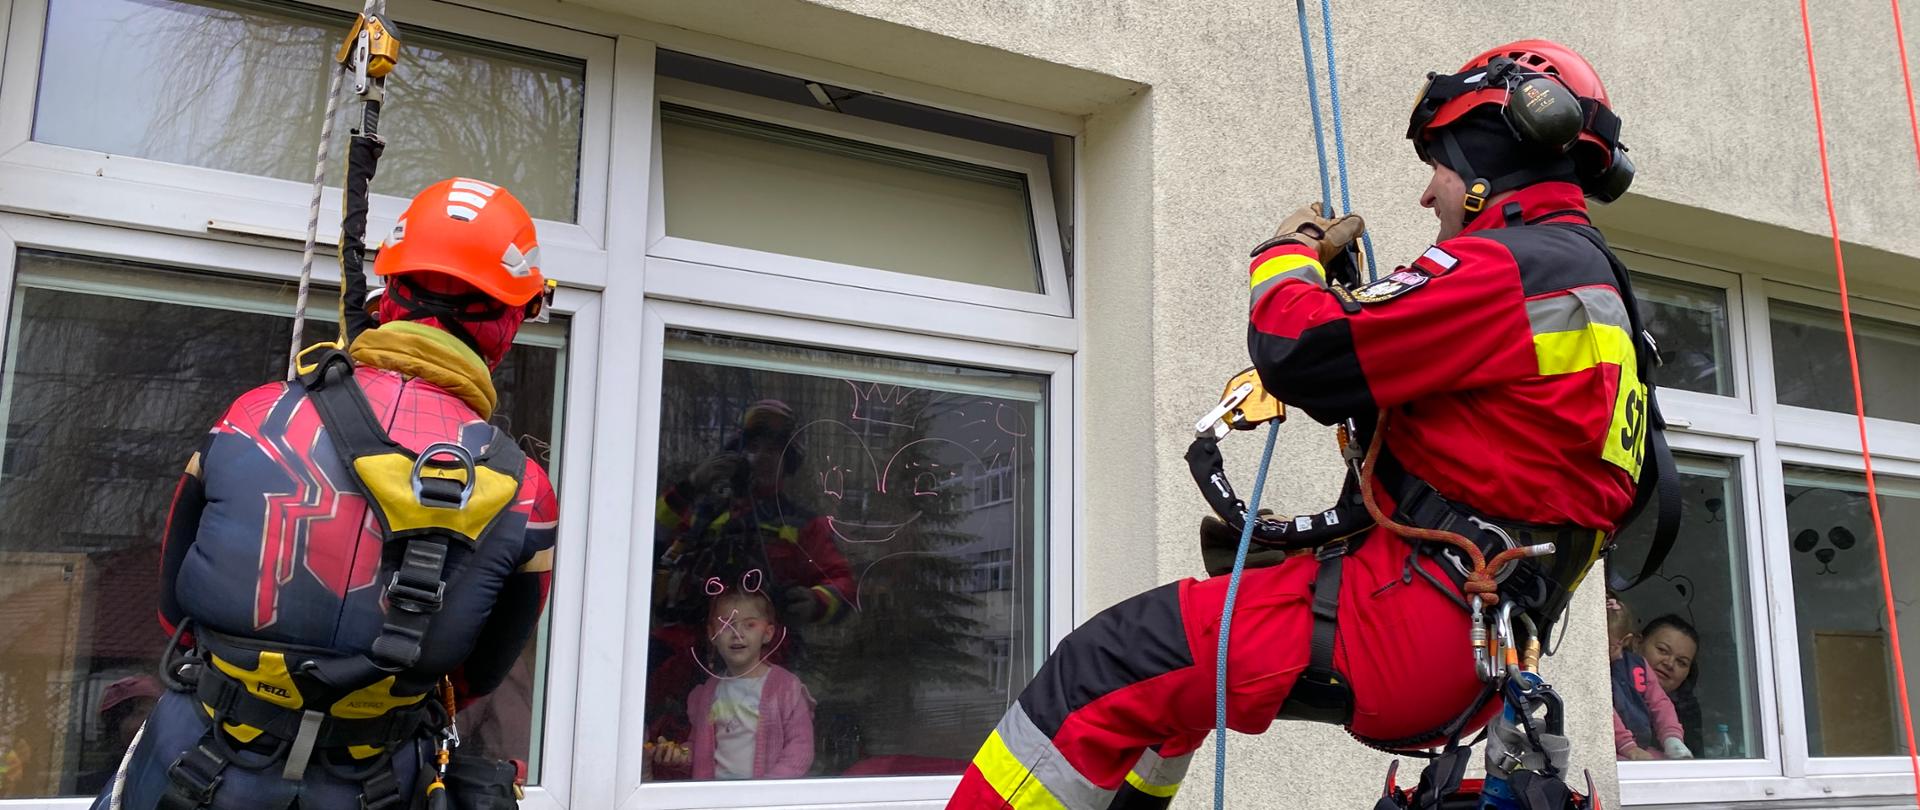 Zdjęcie przedstawia strażaka oraz alpinistę opuszczonych na linach za pomocą technik alpinistycznych do okna szpitala przez, które machają do dzieci znajdujących się w środku.